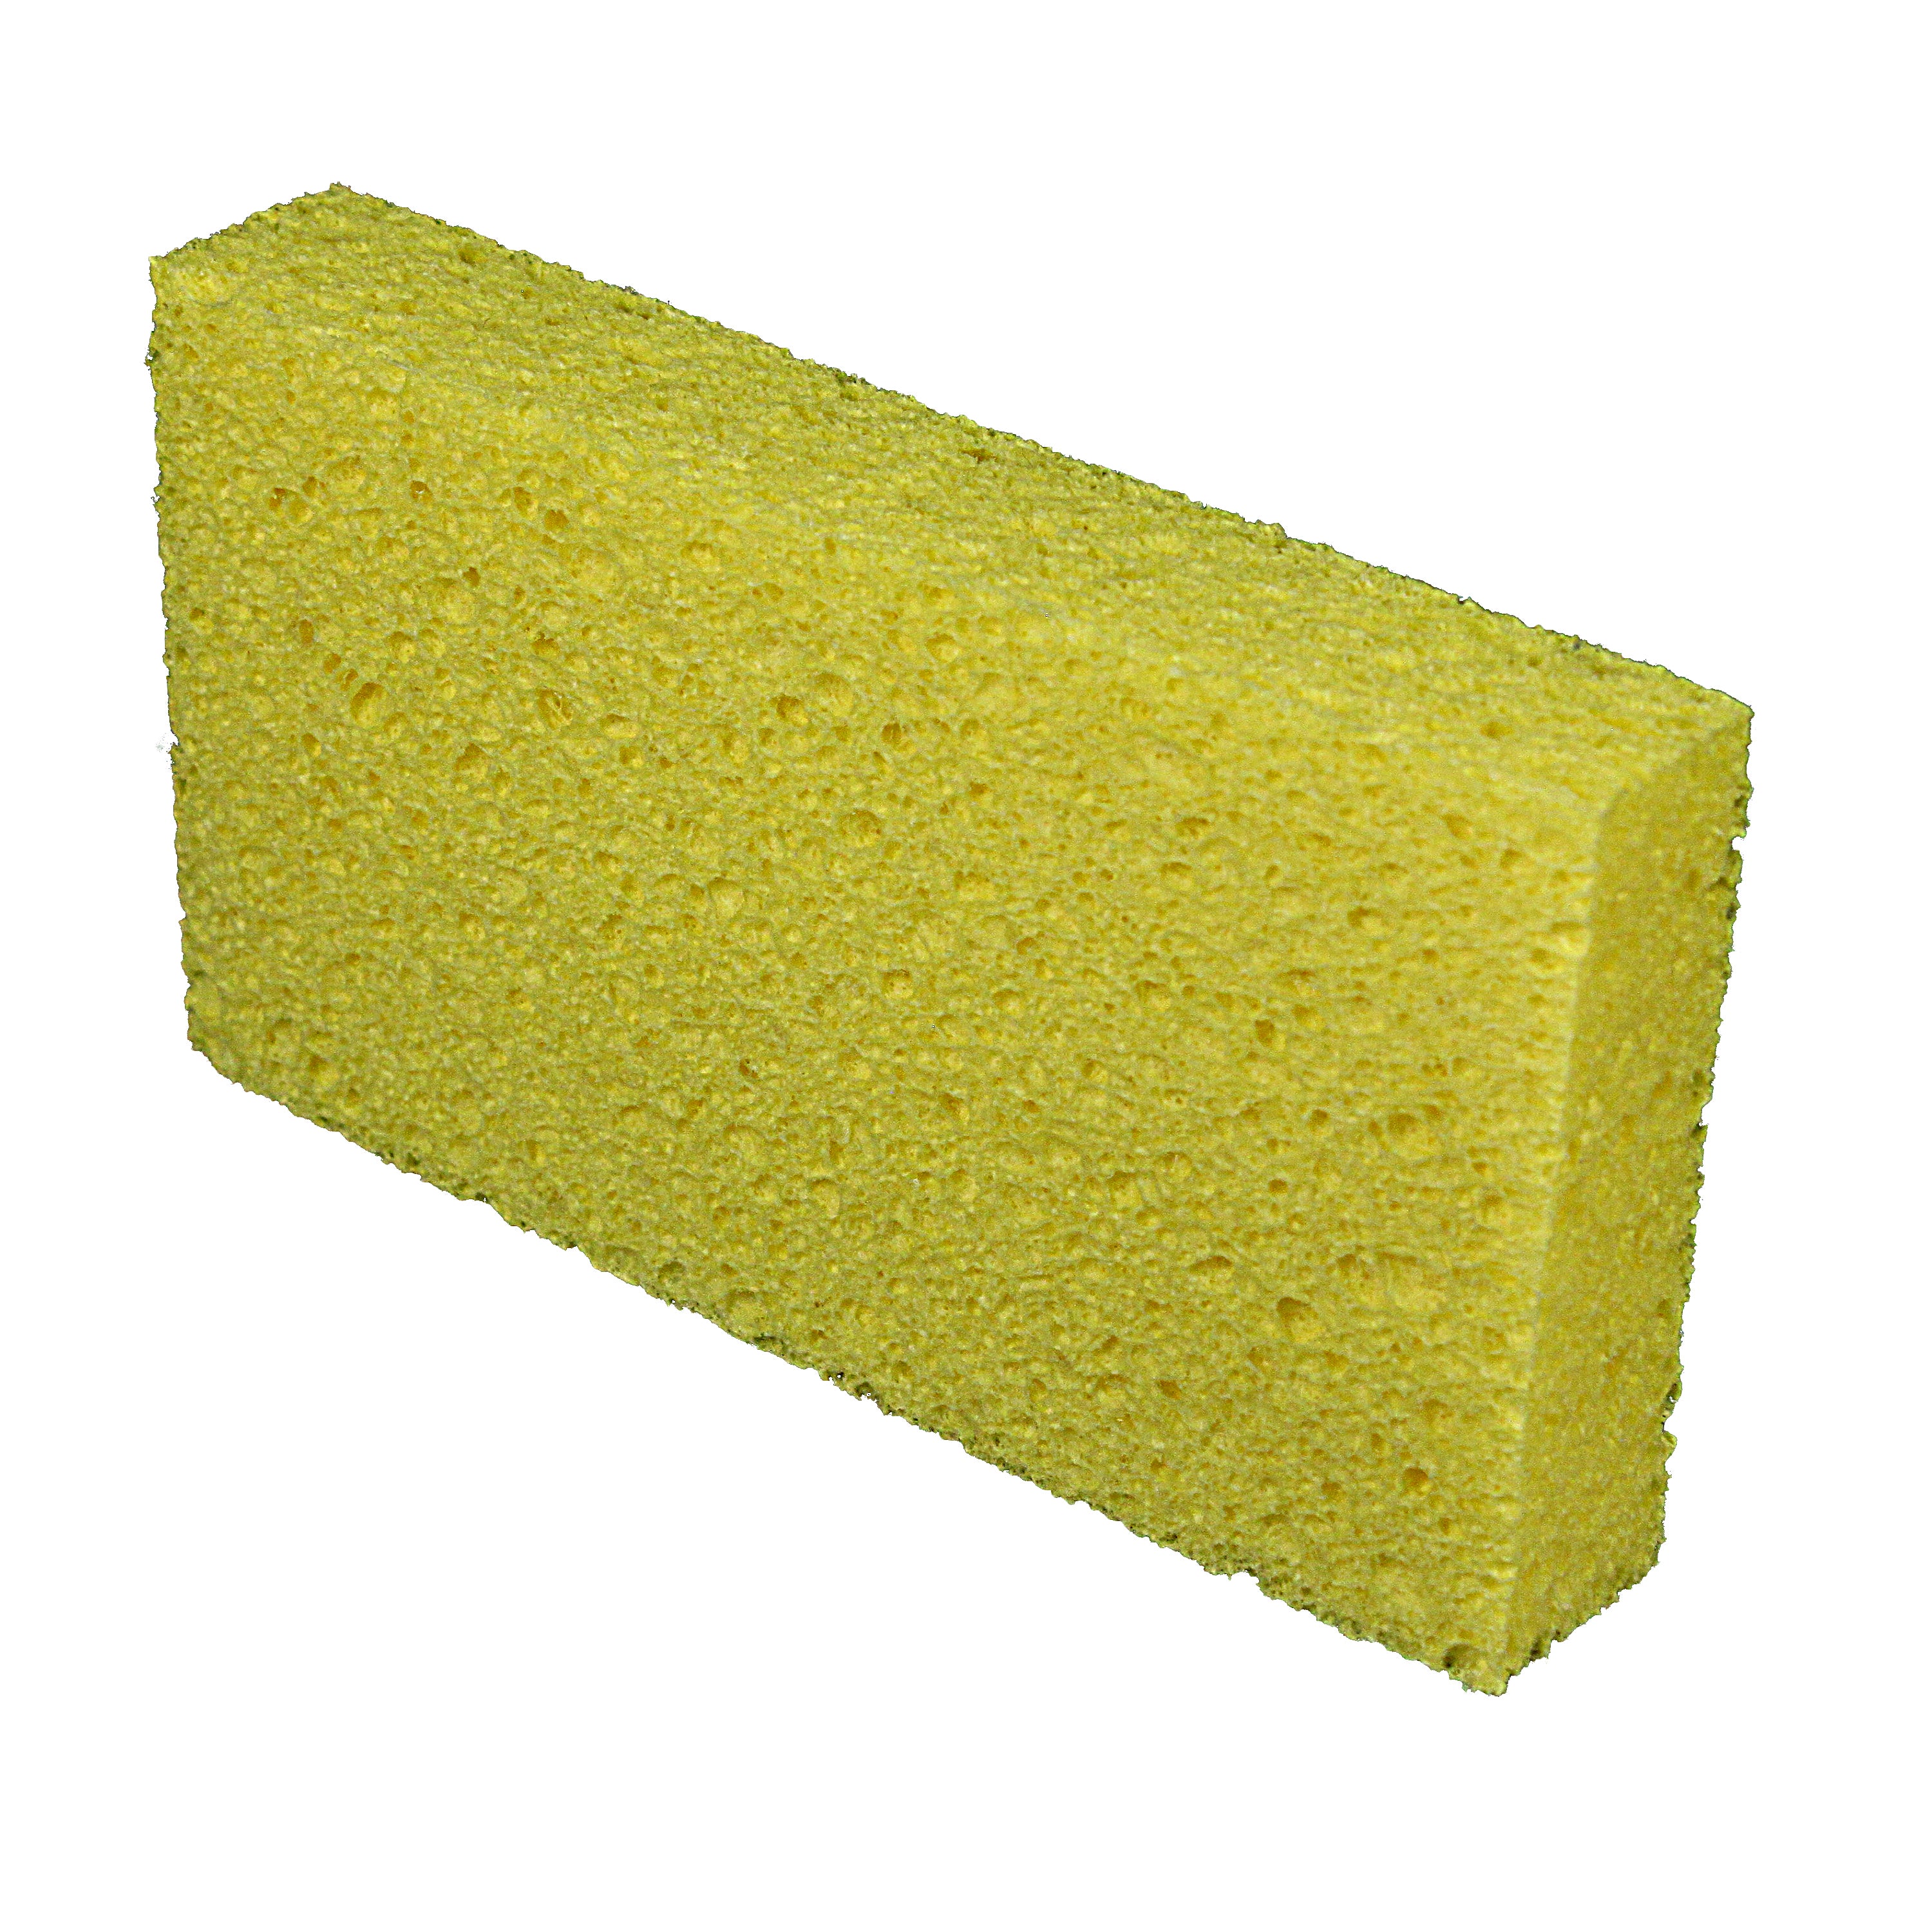 Large Cellulose Sponge (Case of 24) Wholesale Bulk Yellow Sponges